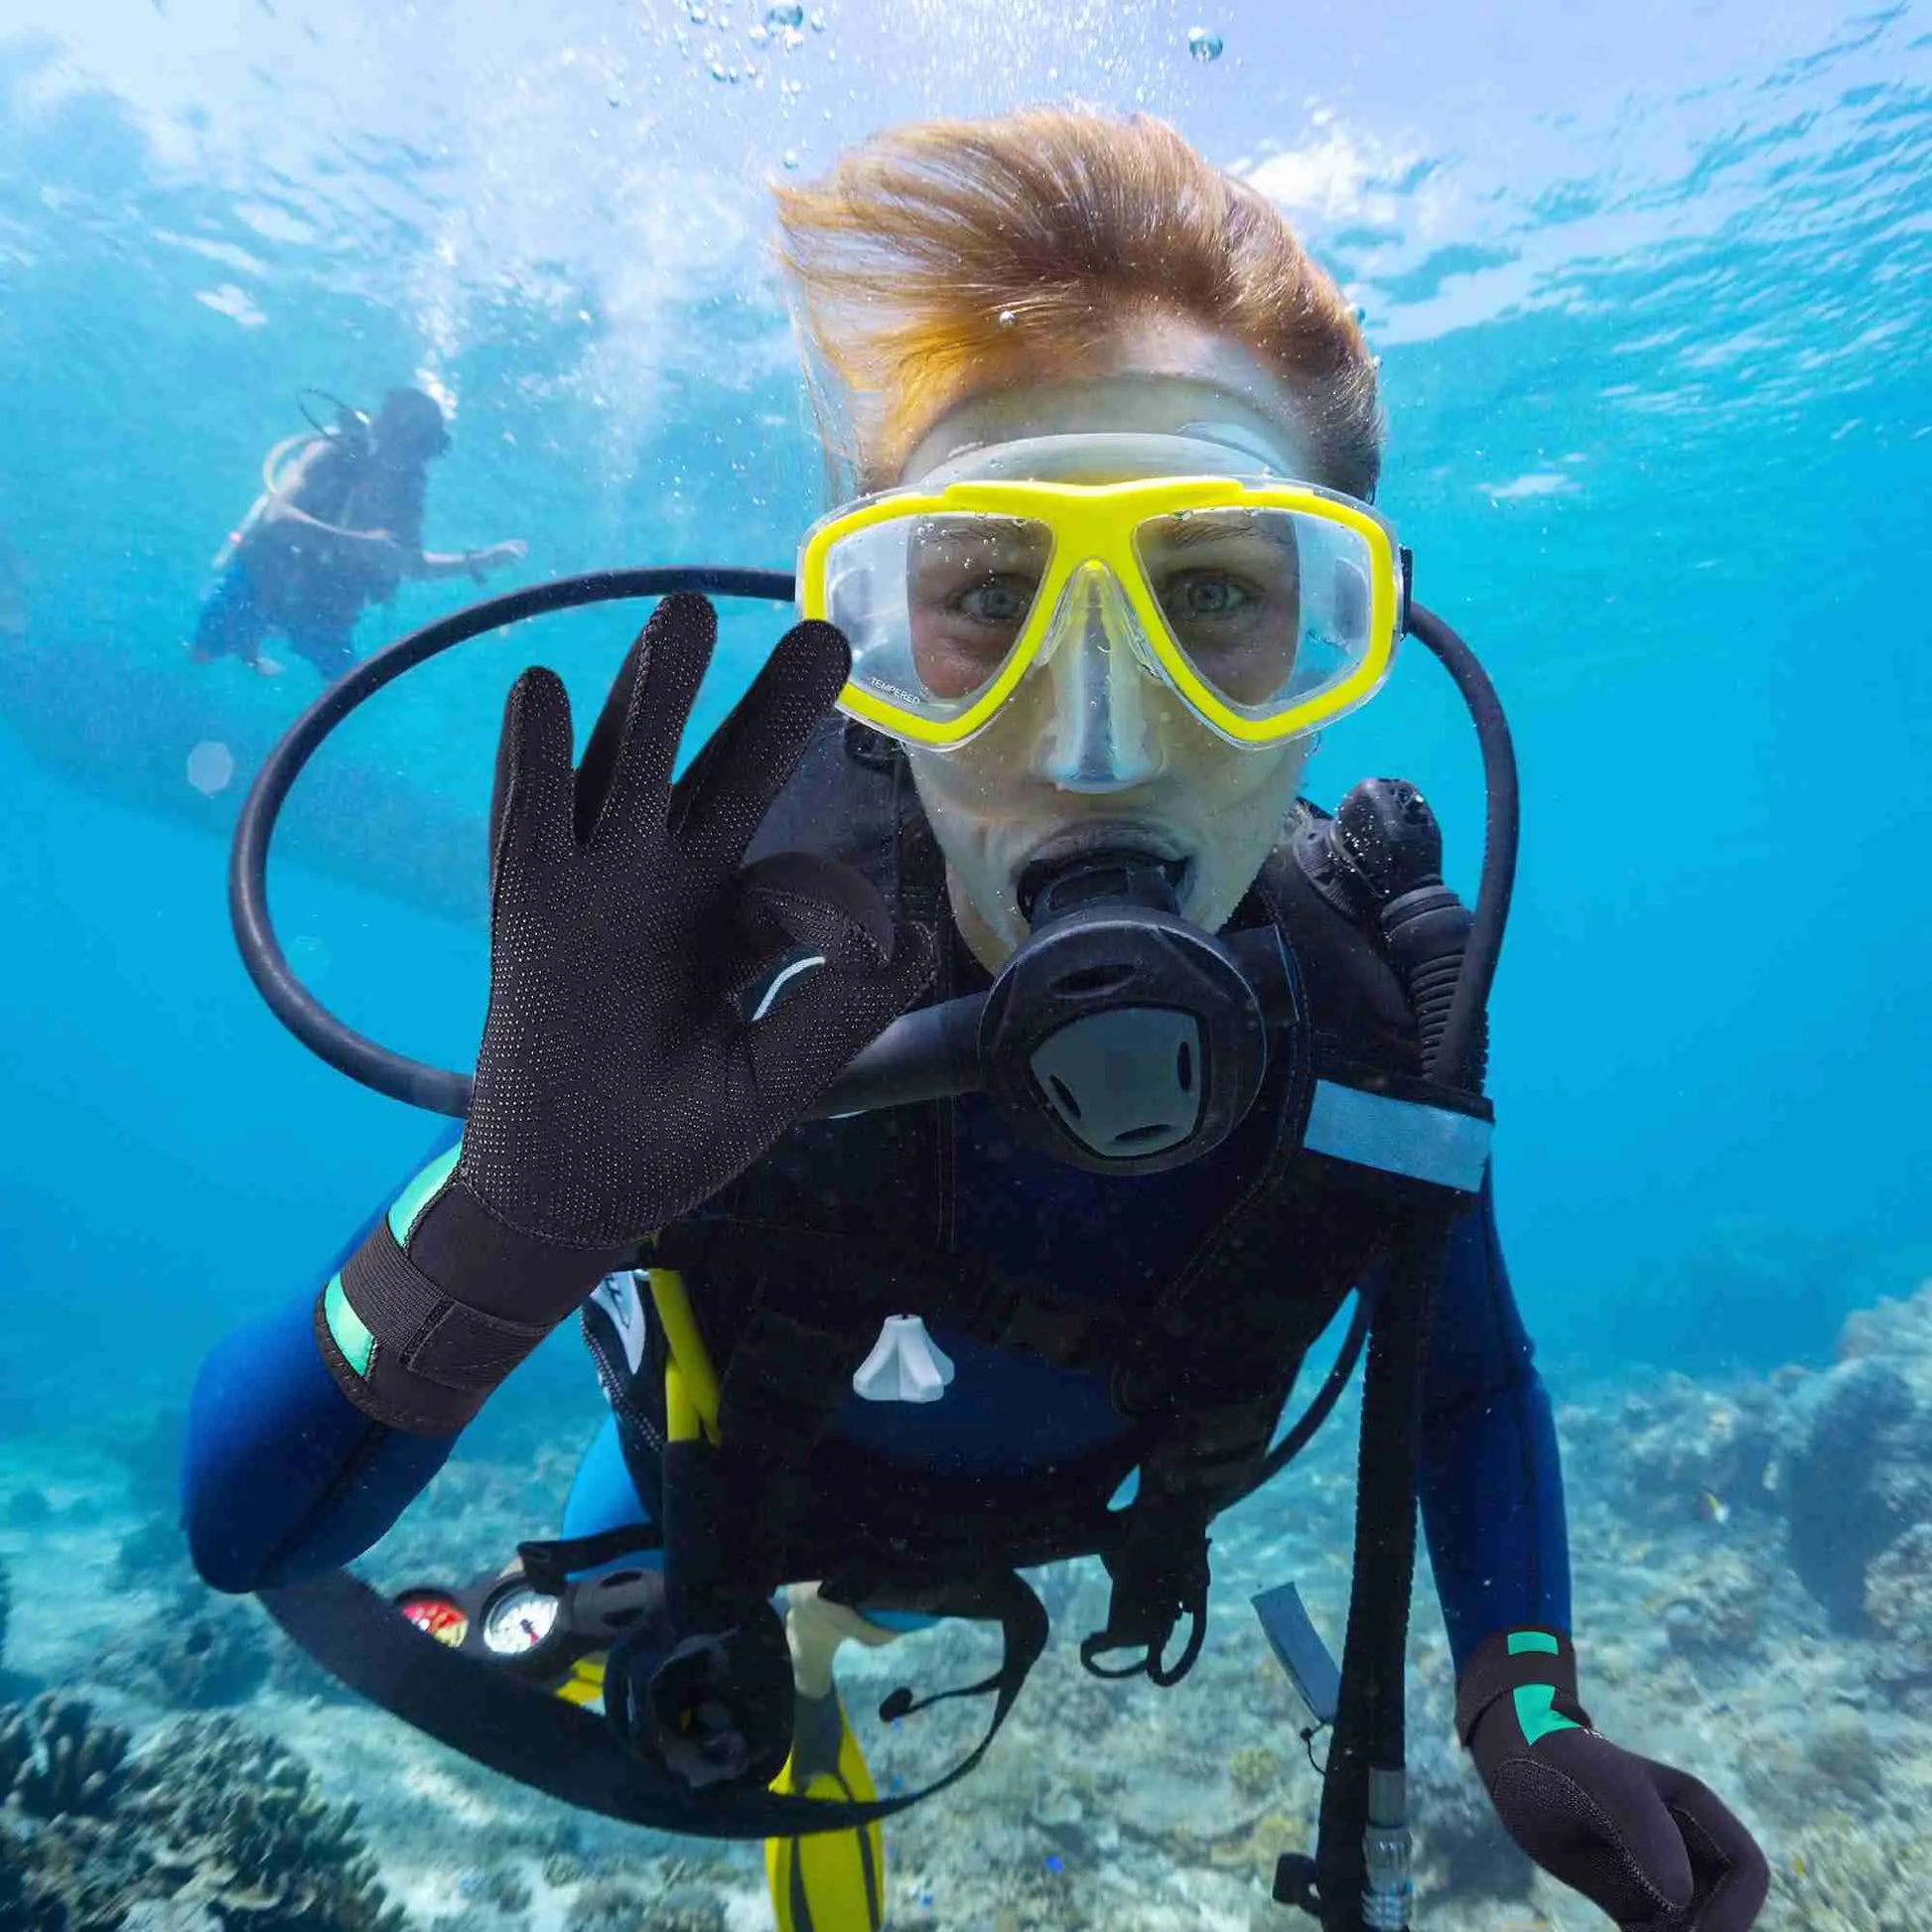 EXski Diving Gloves, 3mm Neoprene Wetsuit Gloves for Scuba Diving